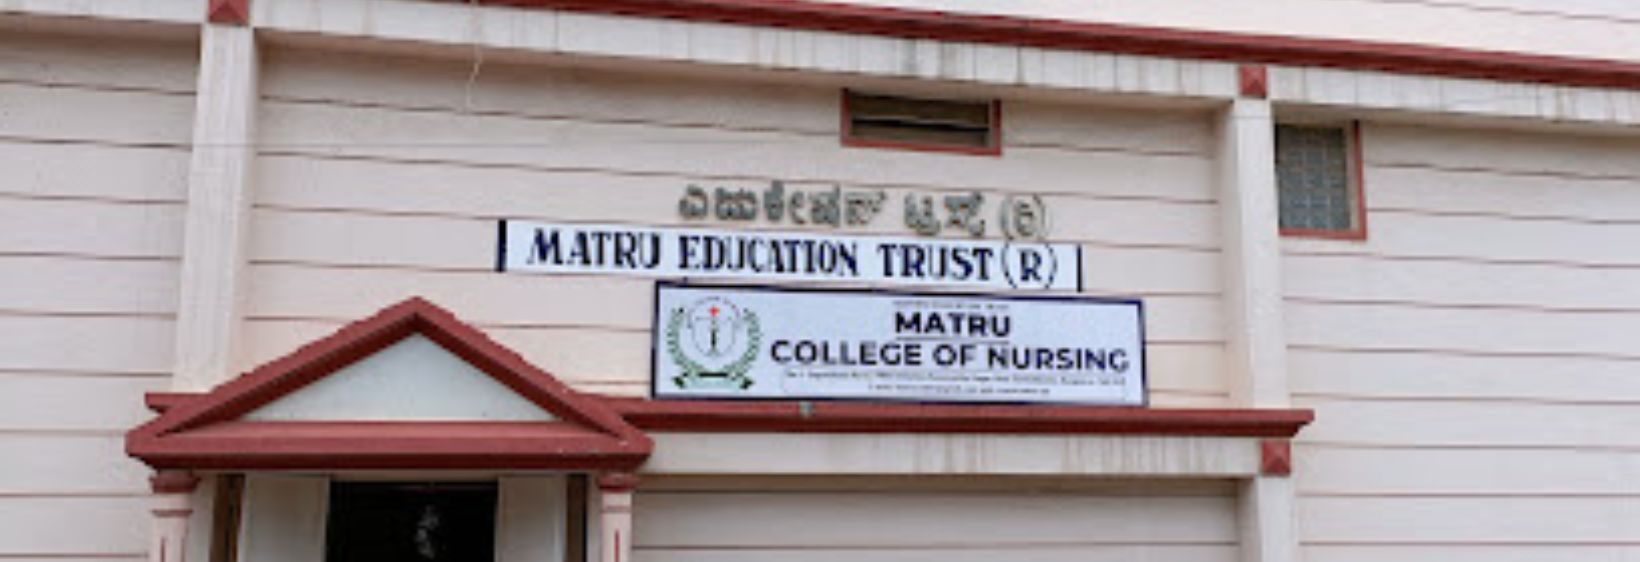 Matru College of Nursing - Bangalore